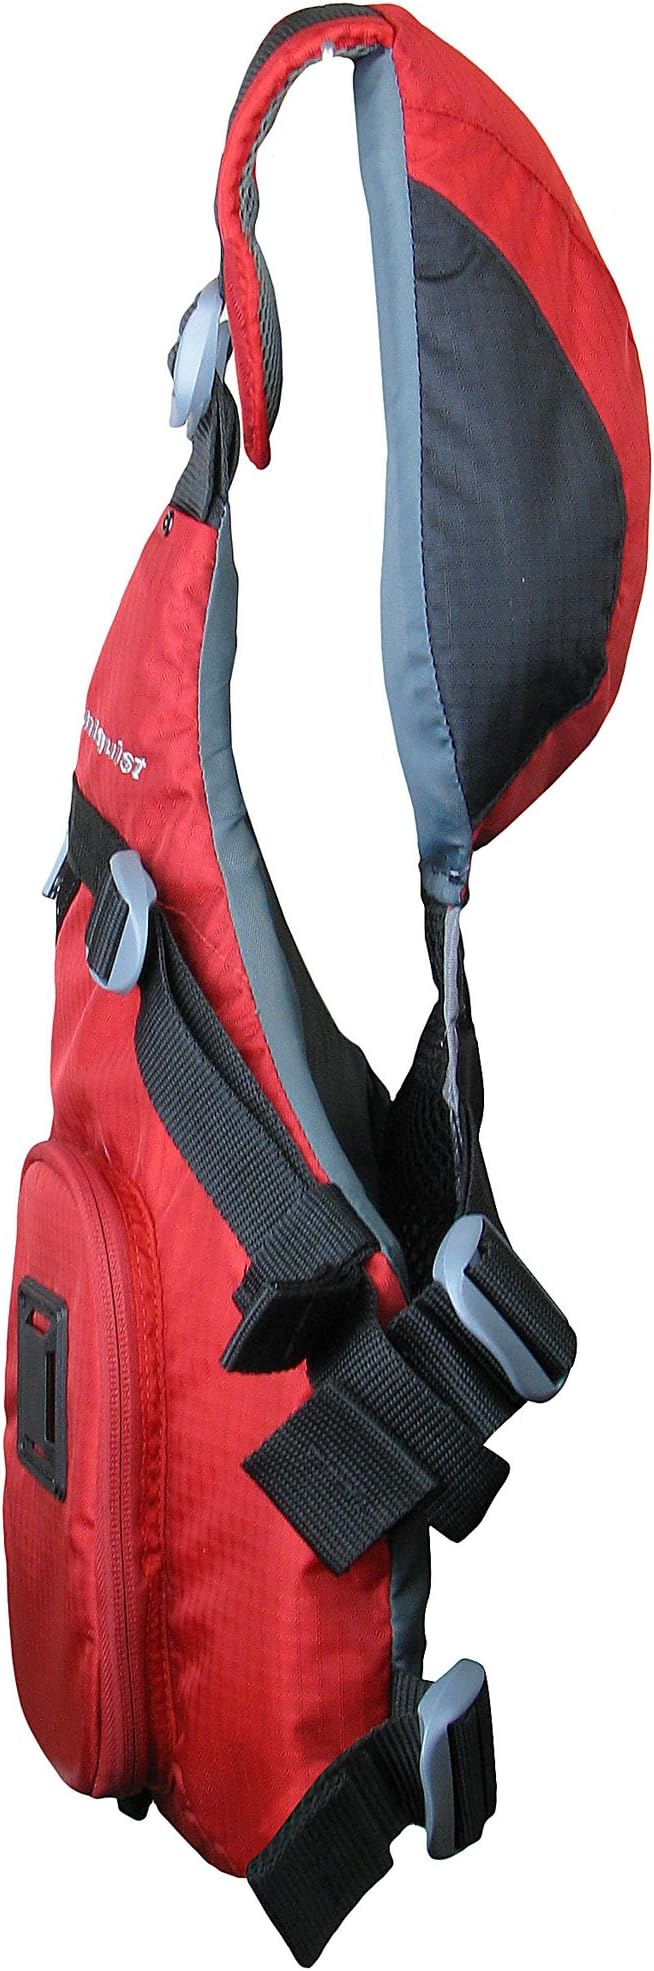 Stohlquist Piseas Lifejacket Red LG/XL (PFD)